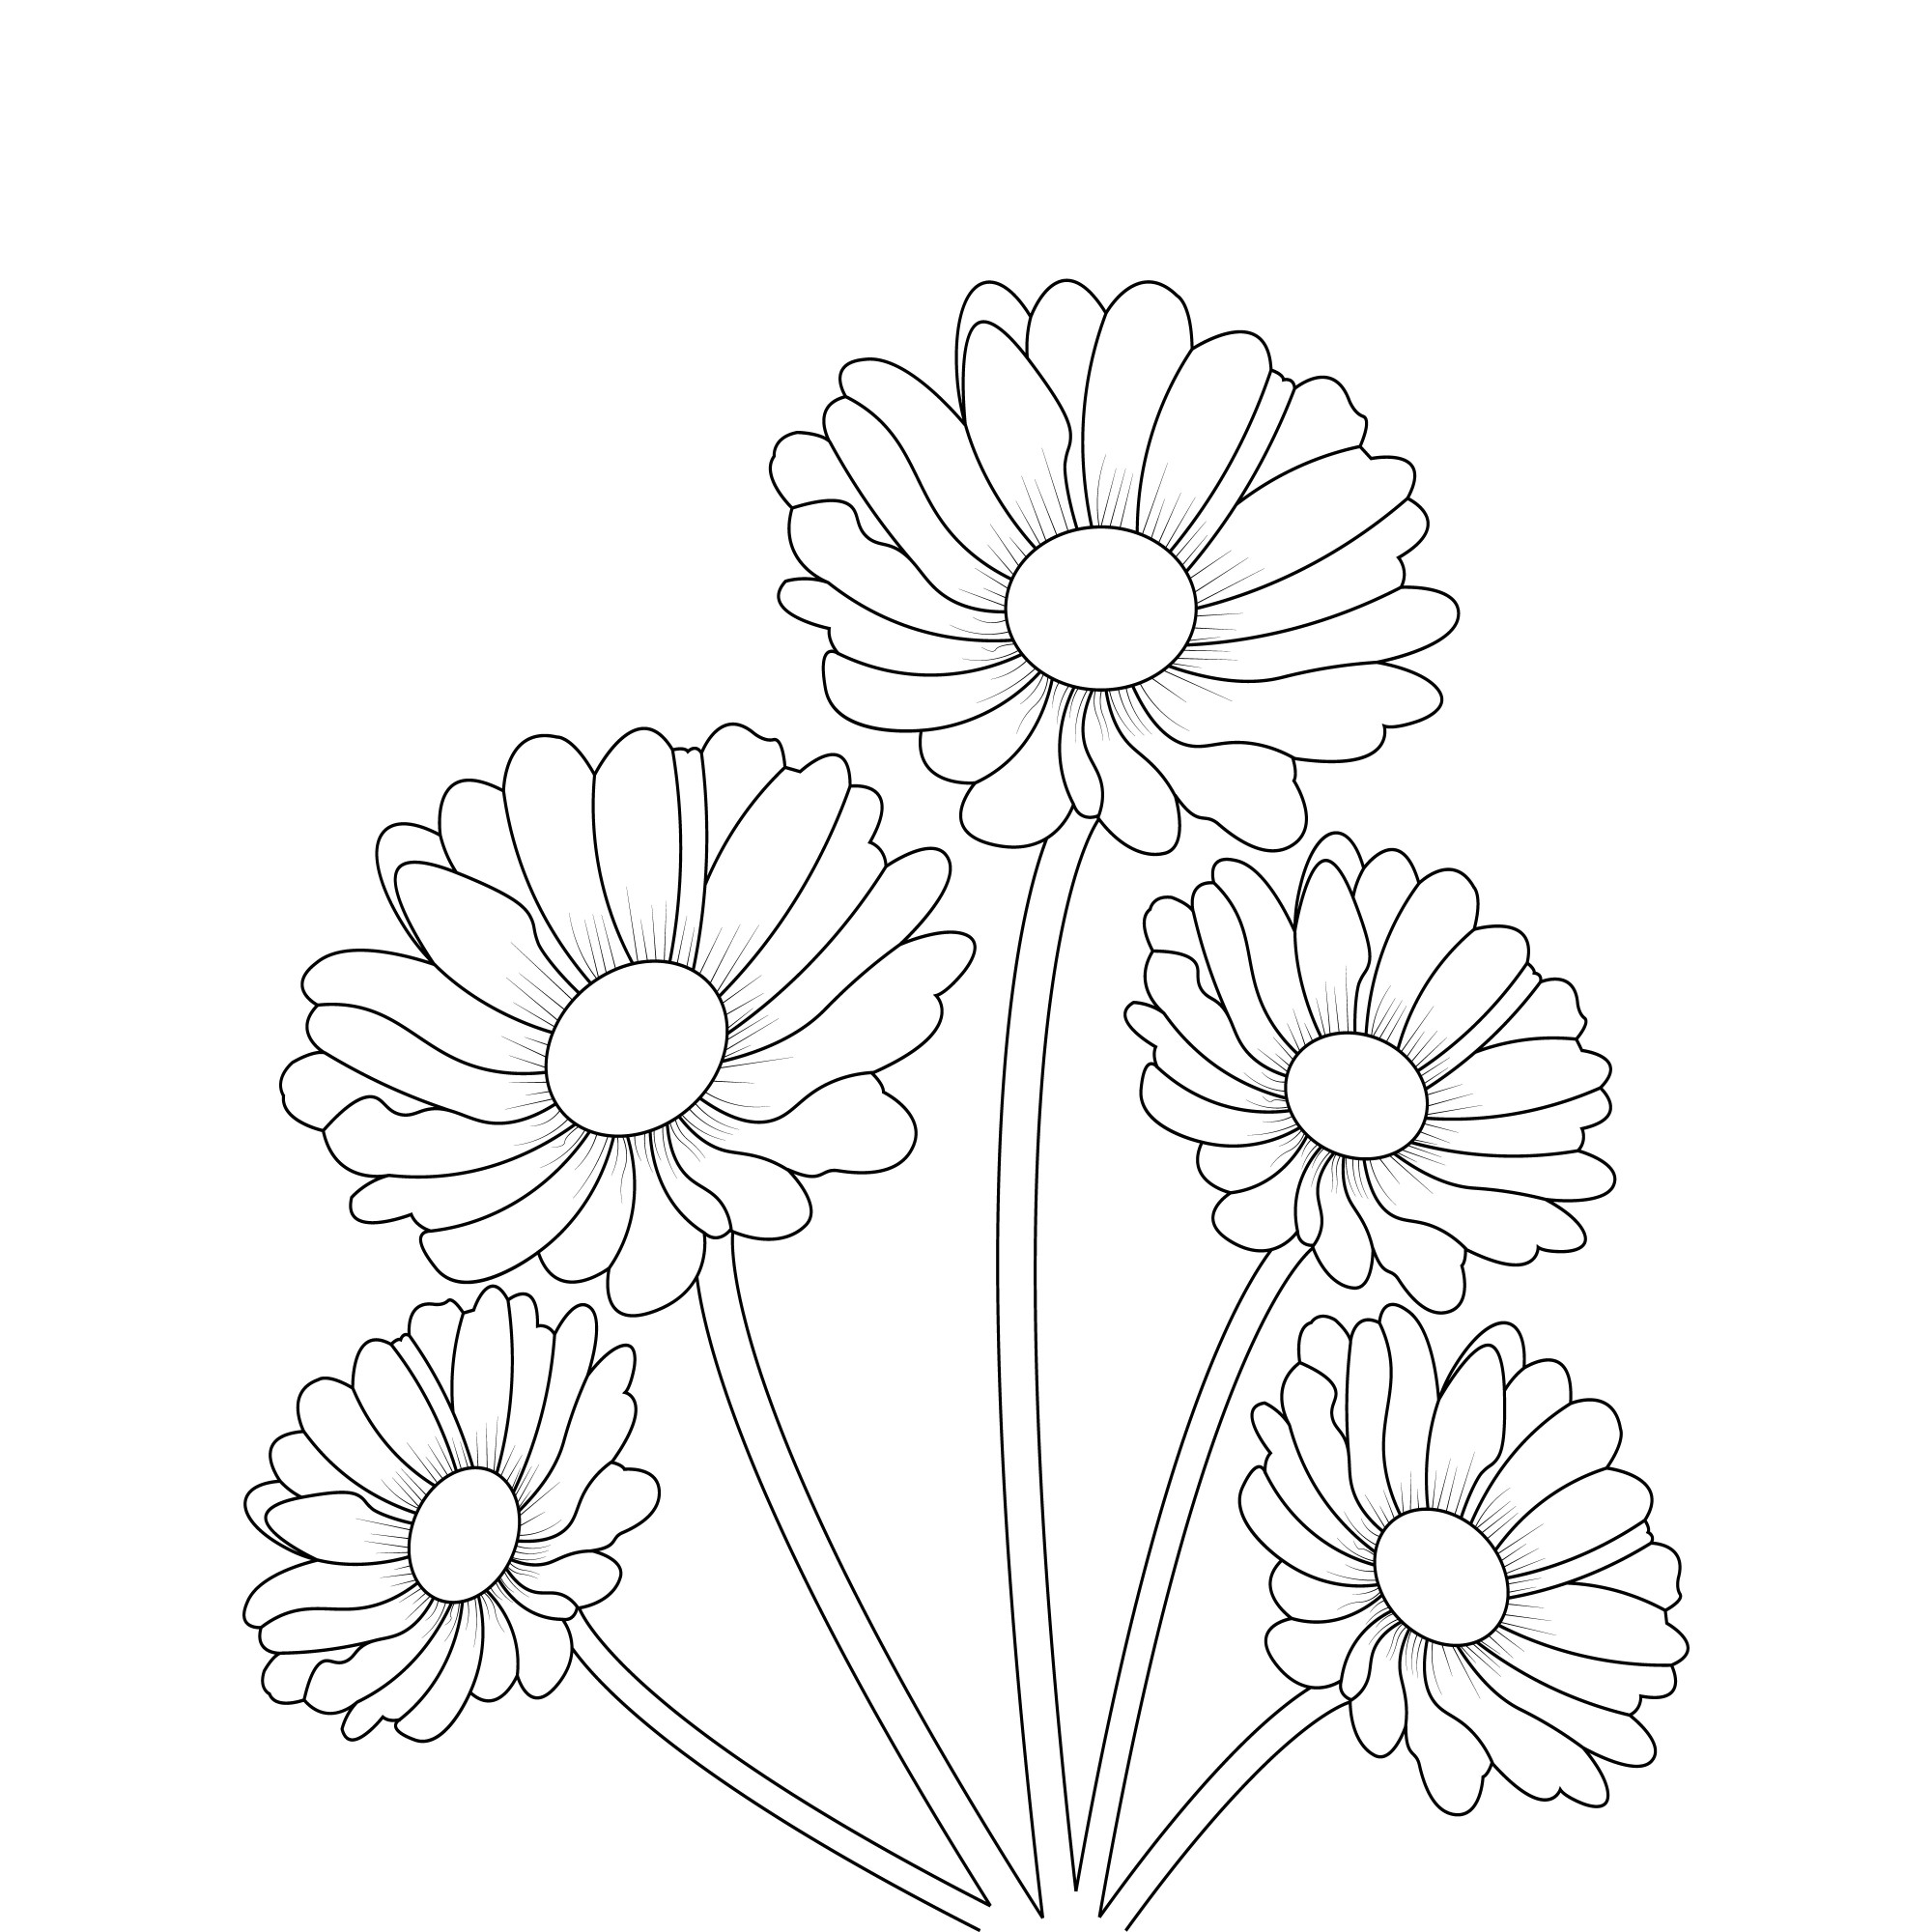 Раскраска для детей: букет из пяти цветов ромашки